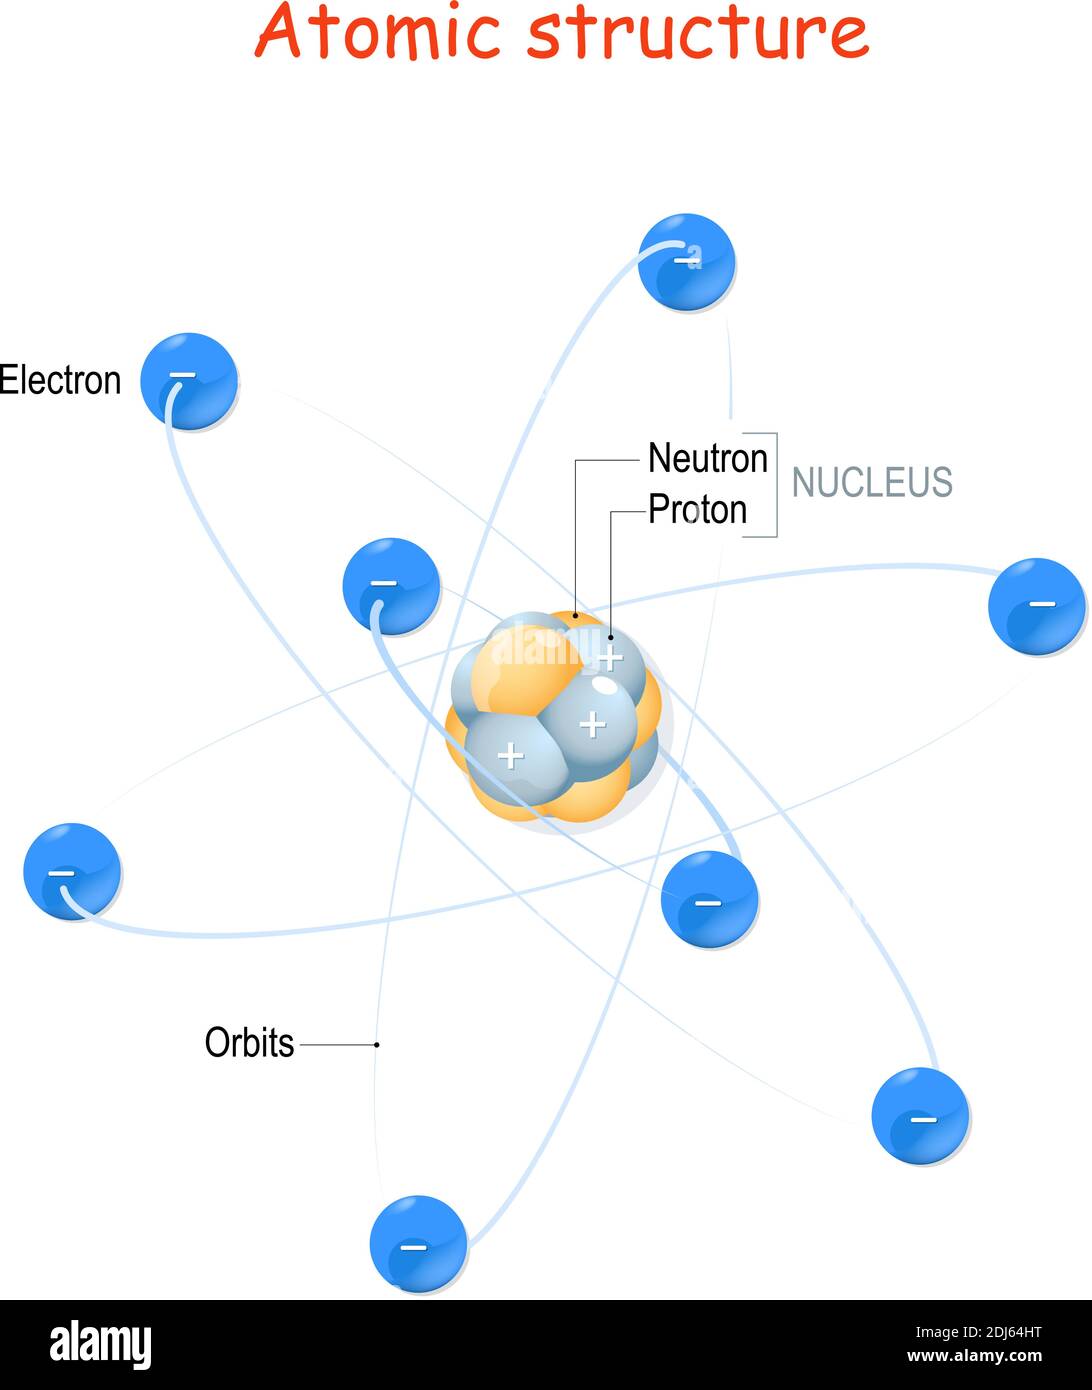 Structure atomique. Par exemple, l'atome de carbone. Noyau avec protons et neutrons, orbites d'électrons. Illustration vectorielle à usage éducatif Illustration de Vecteur